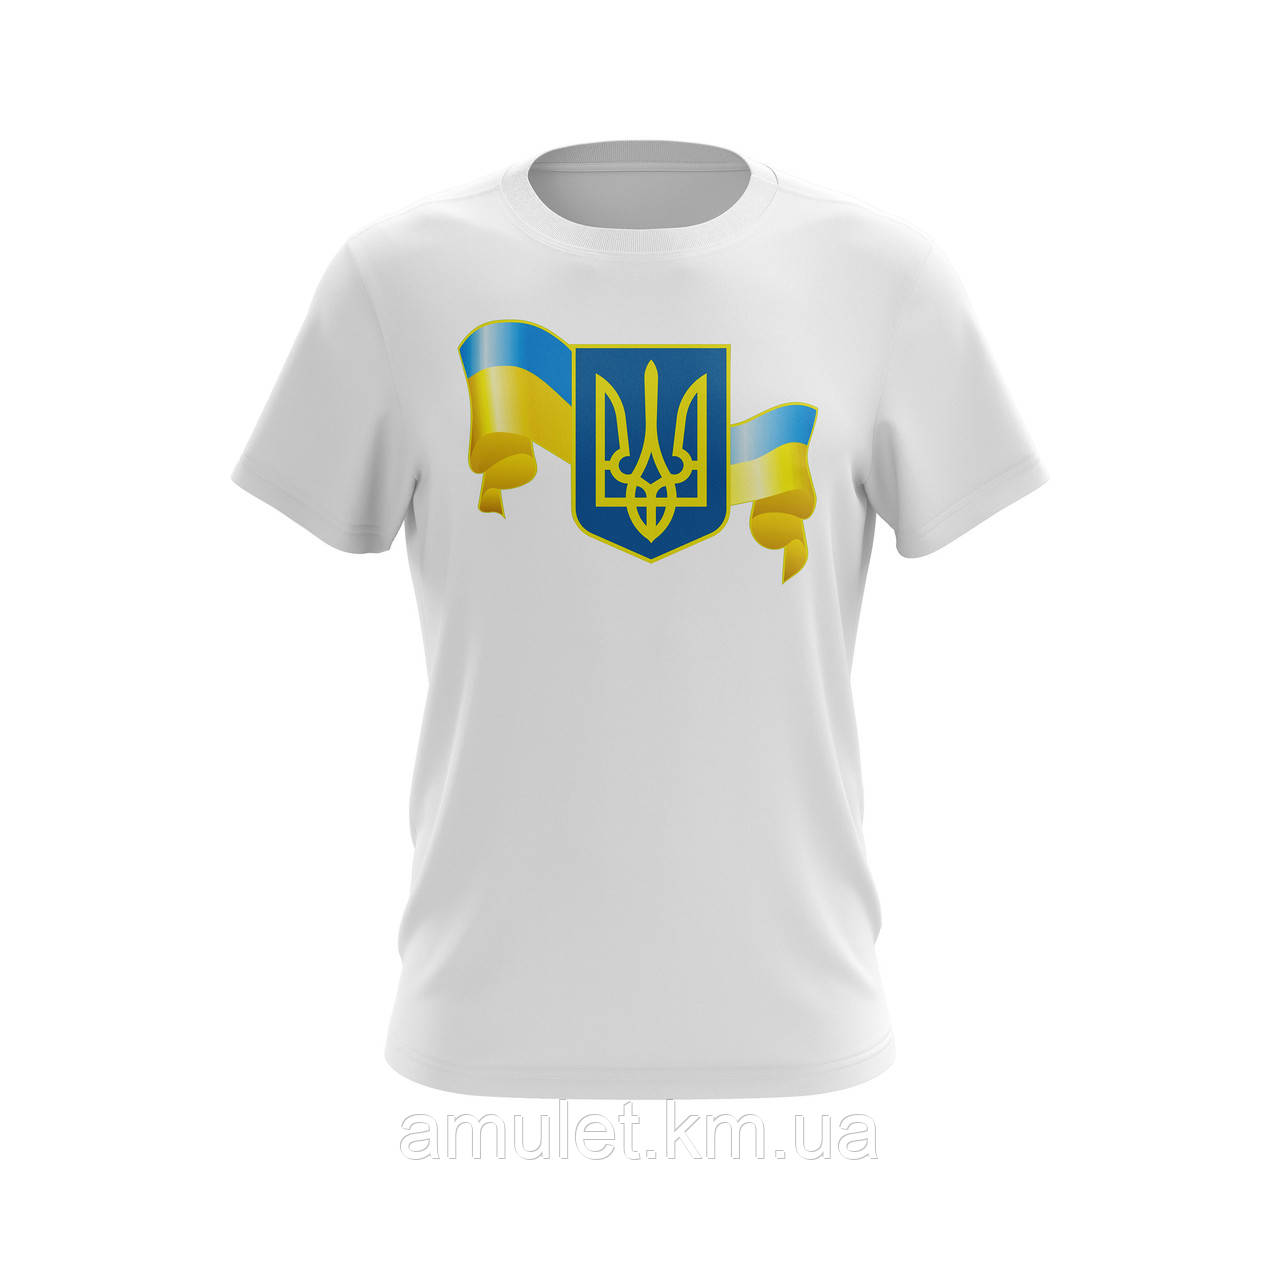 Футболка чоловіча з принтом "Україна,Флаг"